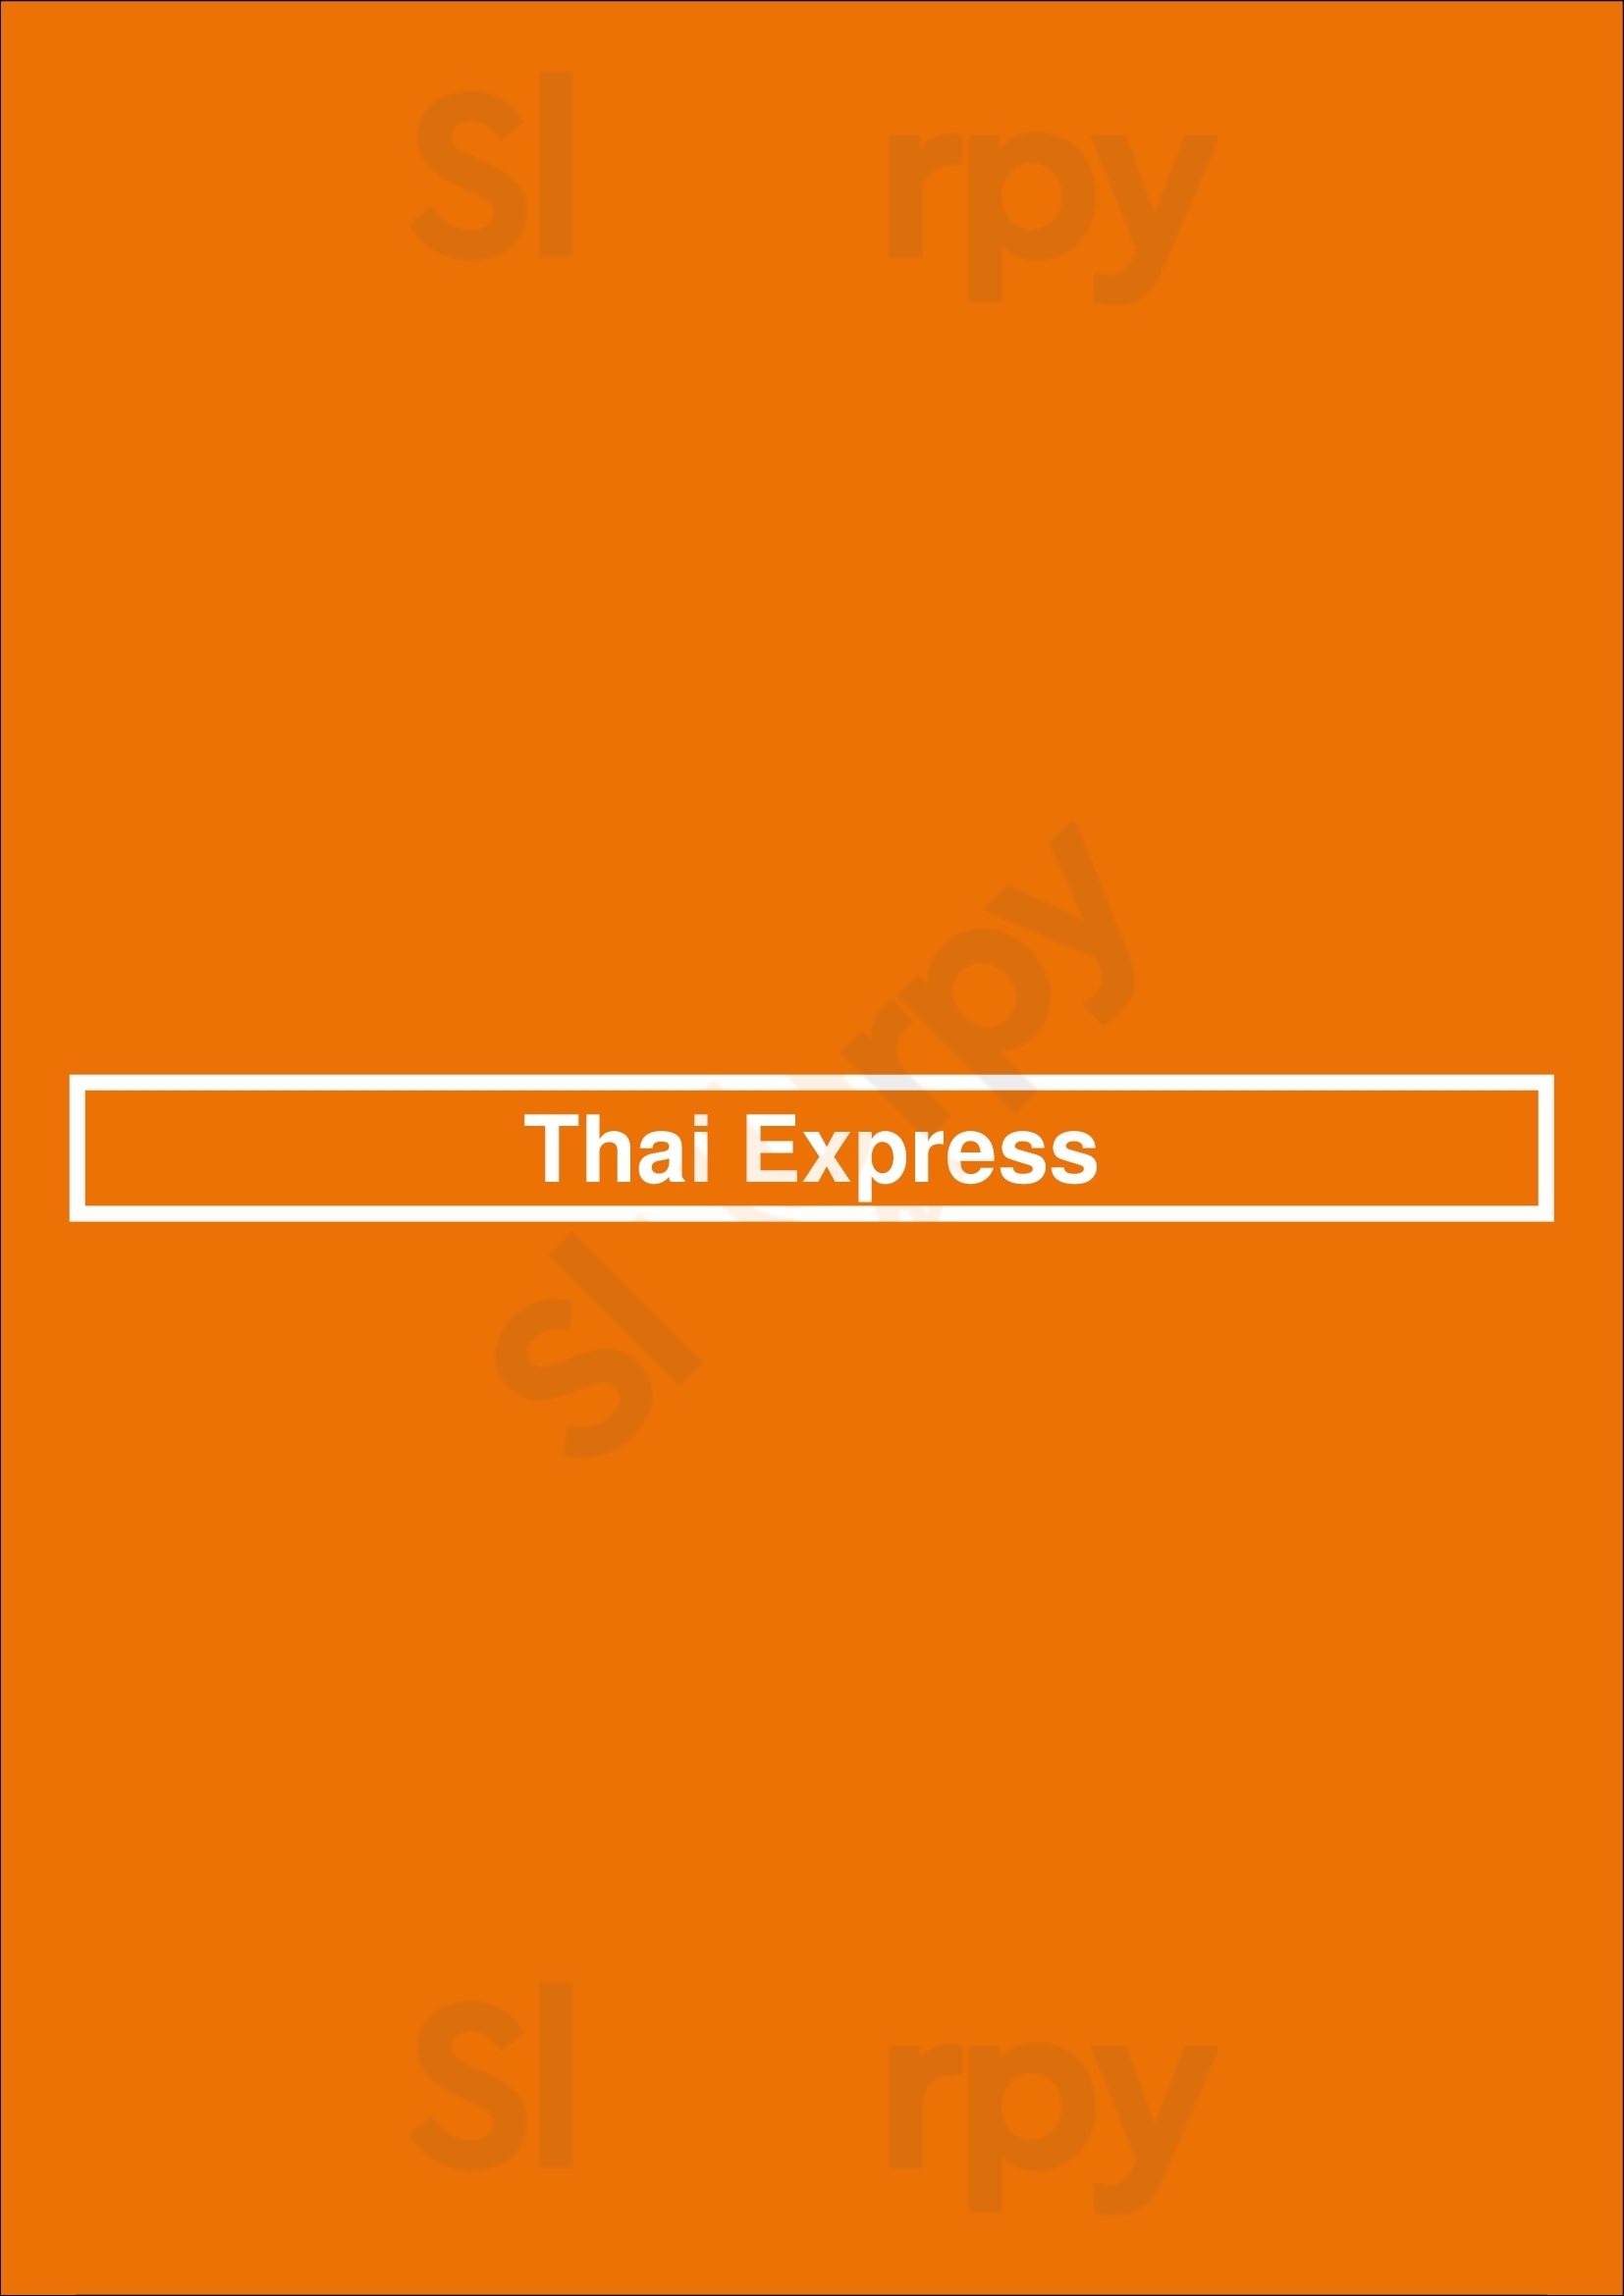 Thai Express Restaurant Winnipeg Winnipeg Menu - 1